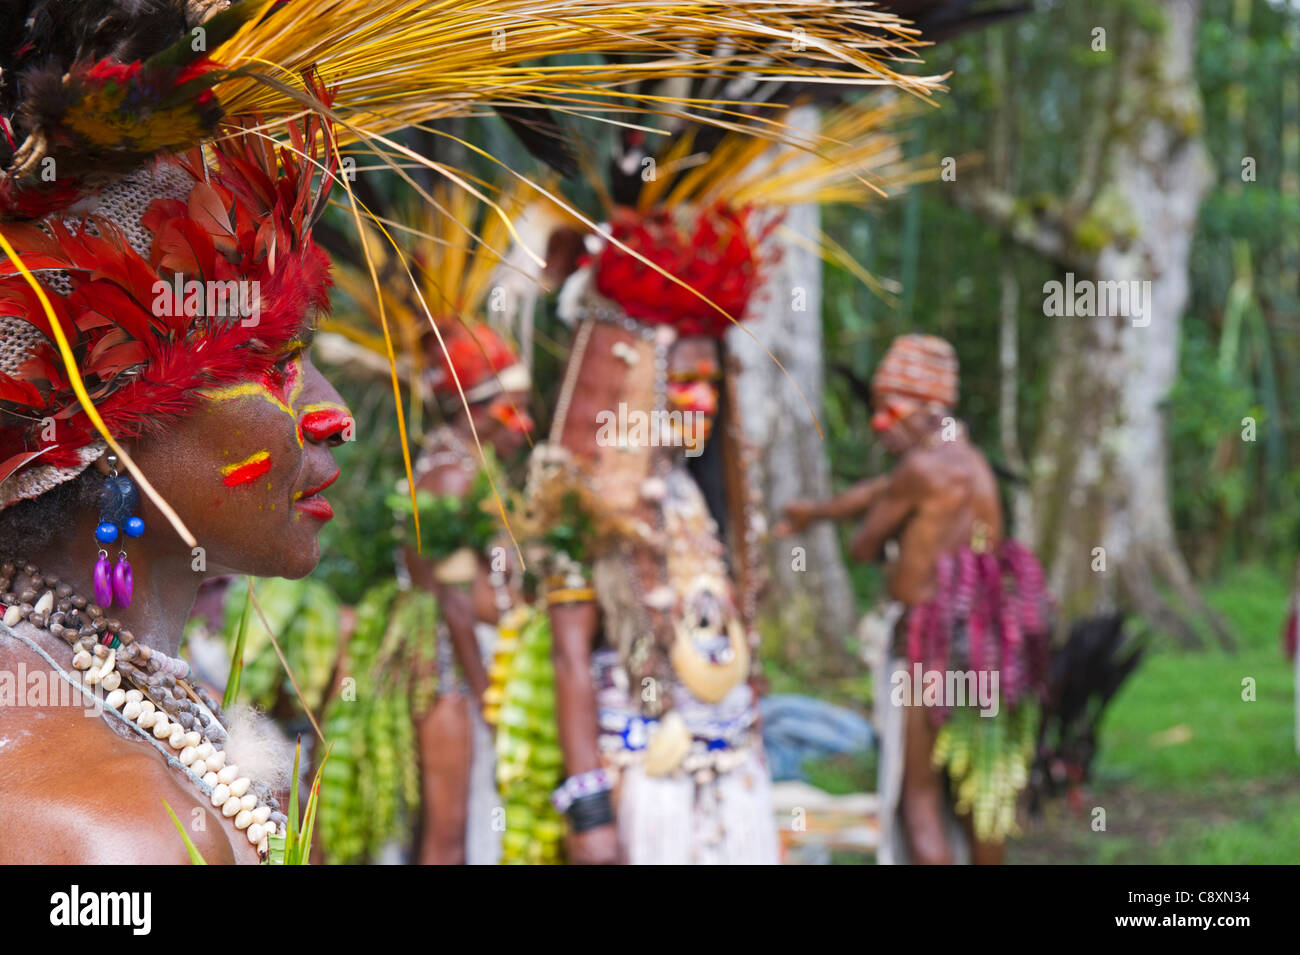 Jiwika Stamm von Western Highlands Vorbereitungen für die Paiya Show in Western Highlands-Papua-Neuguinea Stockfoto